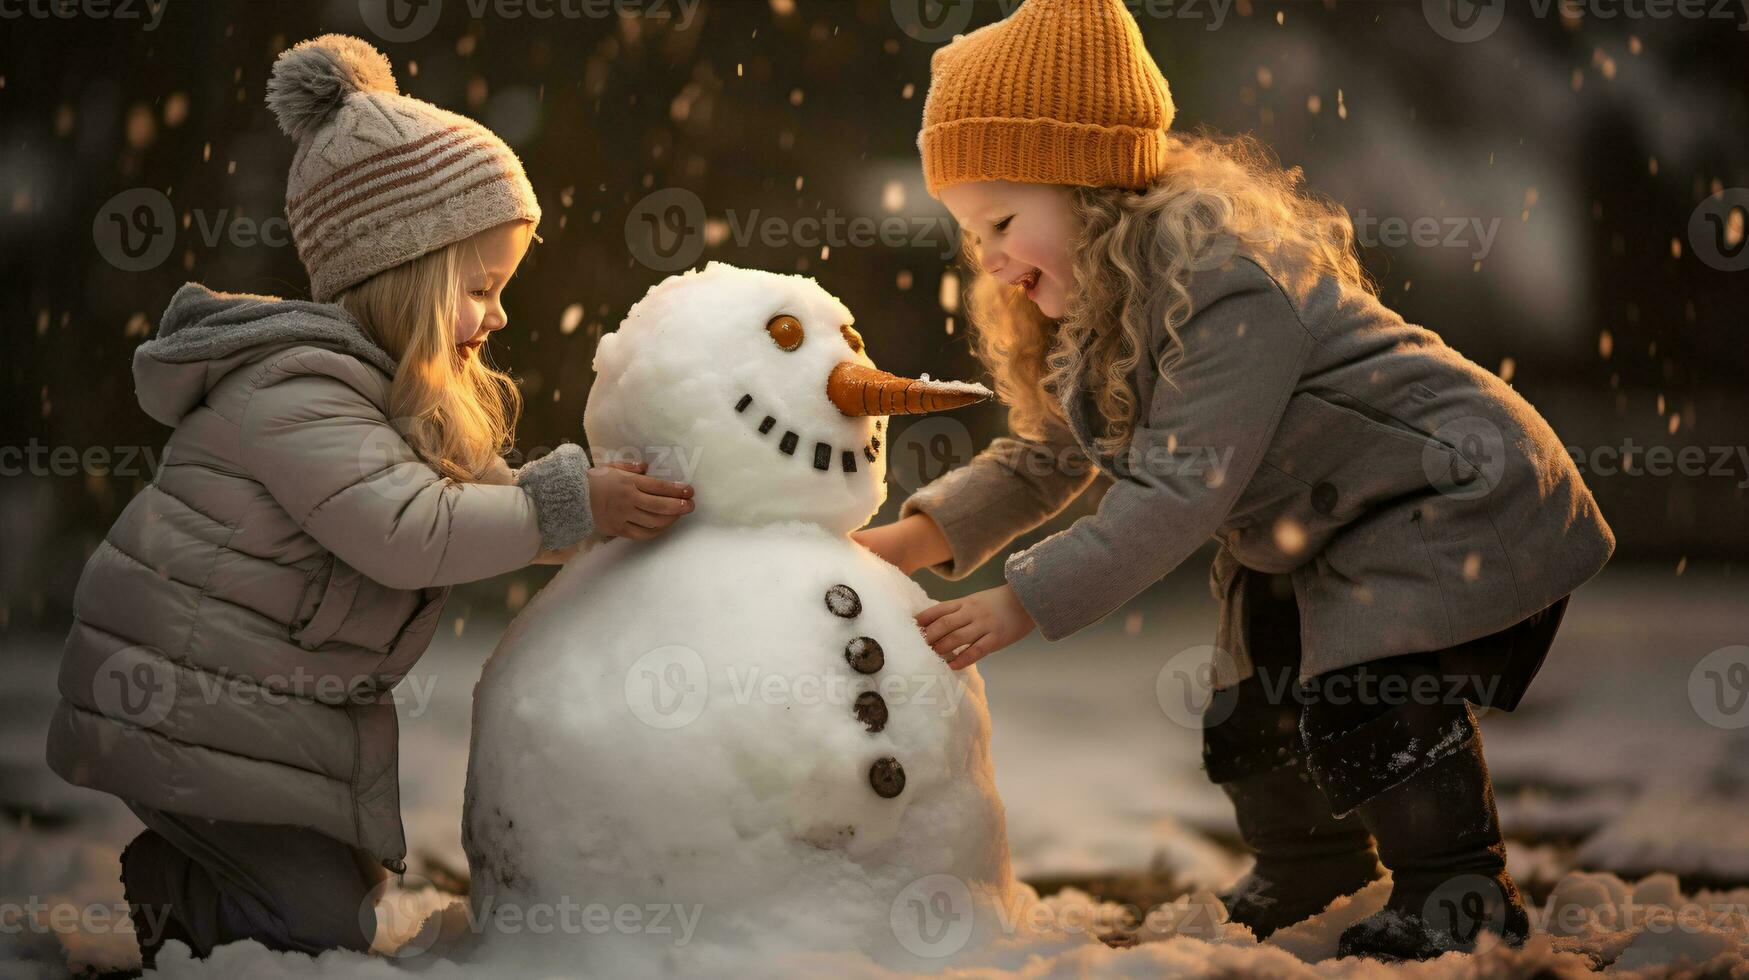 Kinder abspielen draußen im Schnee. draussen Spaß zum Familie Weihnachten Urlaub. spielen draußen. glücklich Kind haben Spaß mit Schneemann. foto